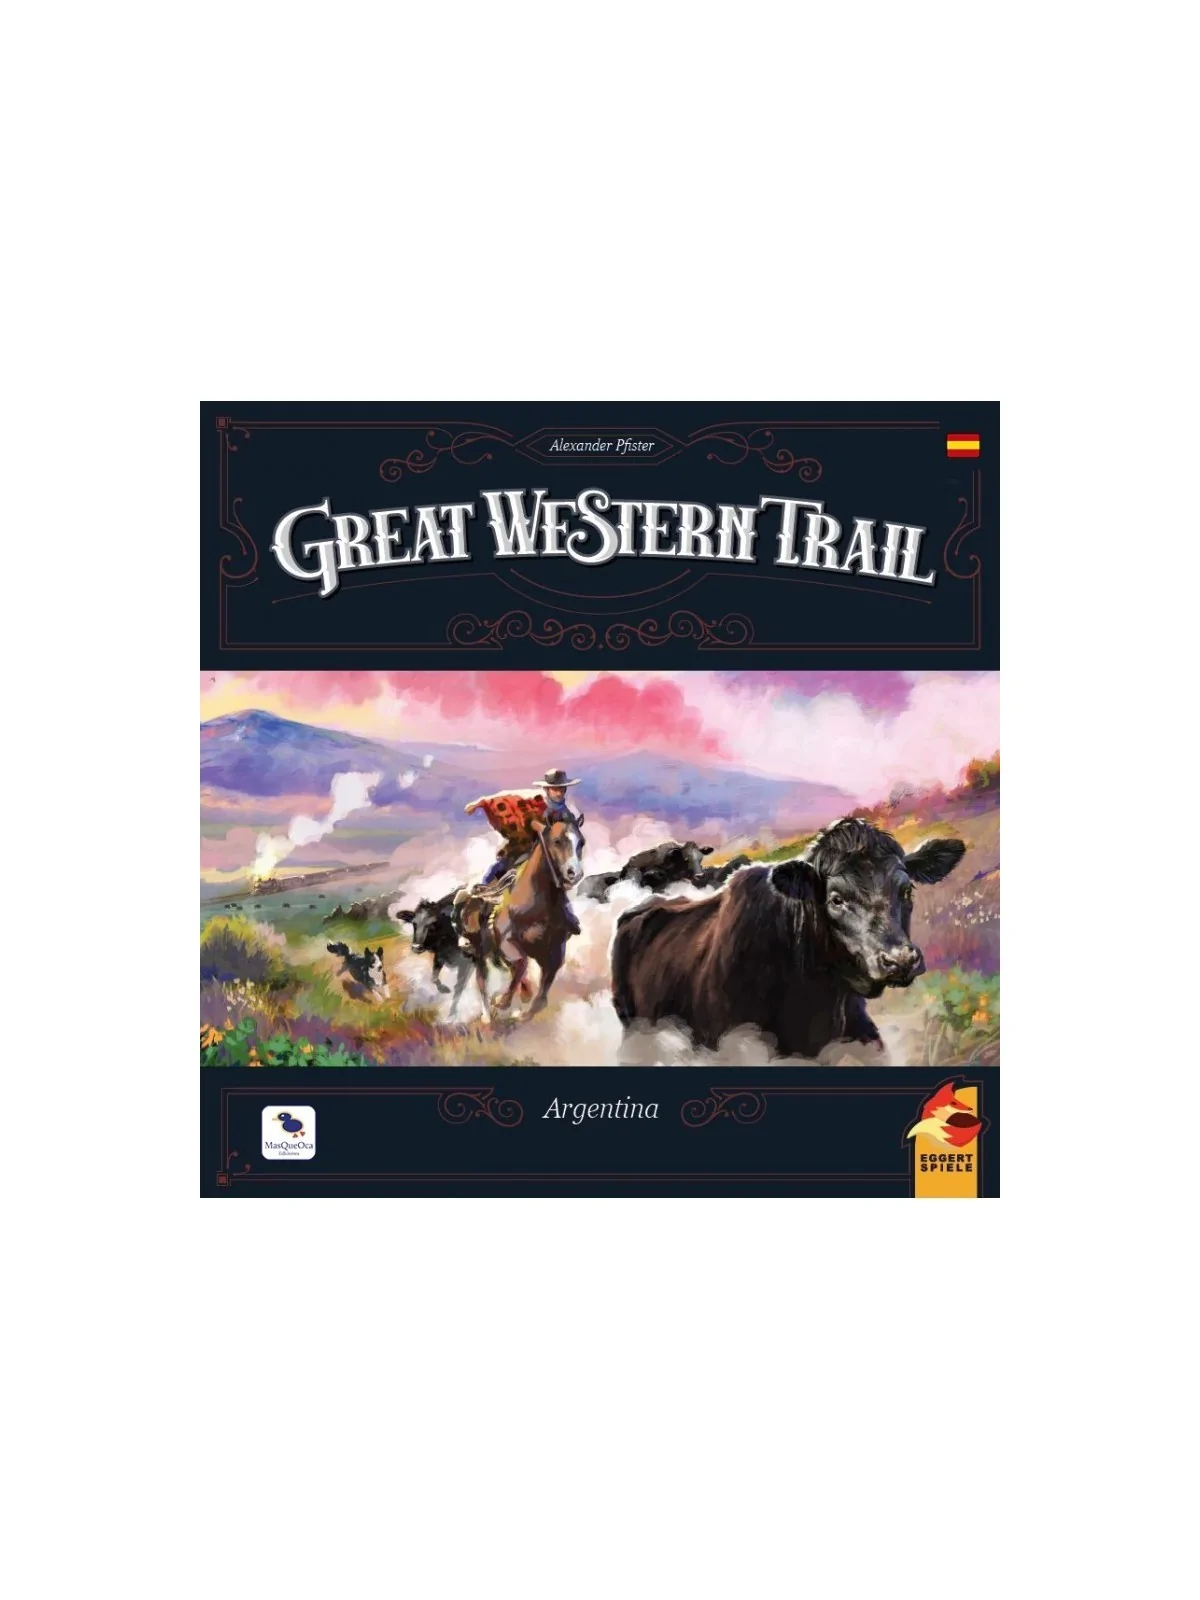 Comprar Great Western Trail: Argentina barato al mejor precio 49,50 € 